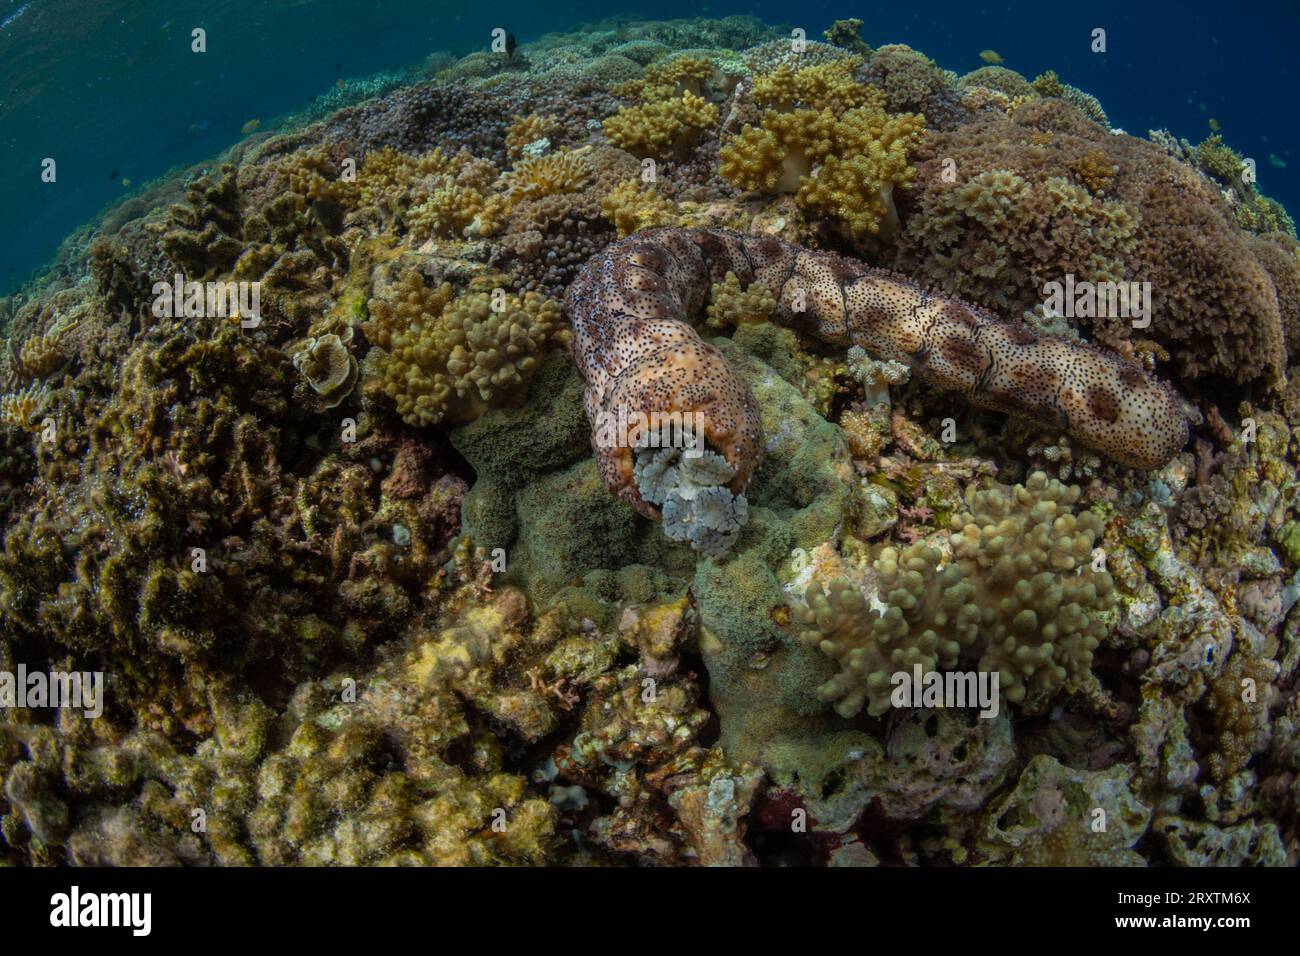 Cetriolo di mare di Graeffe (Pearsonothuria graeffe), nelle scogliere poco profonde al largo di Sandy Beach, Manta Point, Raja Ampat, Indonesia, Sud-Est asiatico, Asia Foto Stock